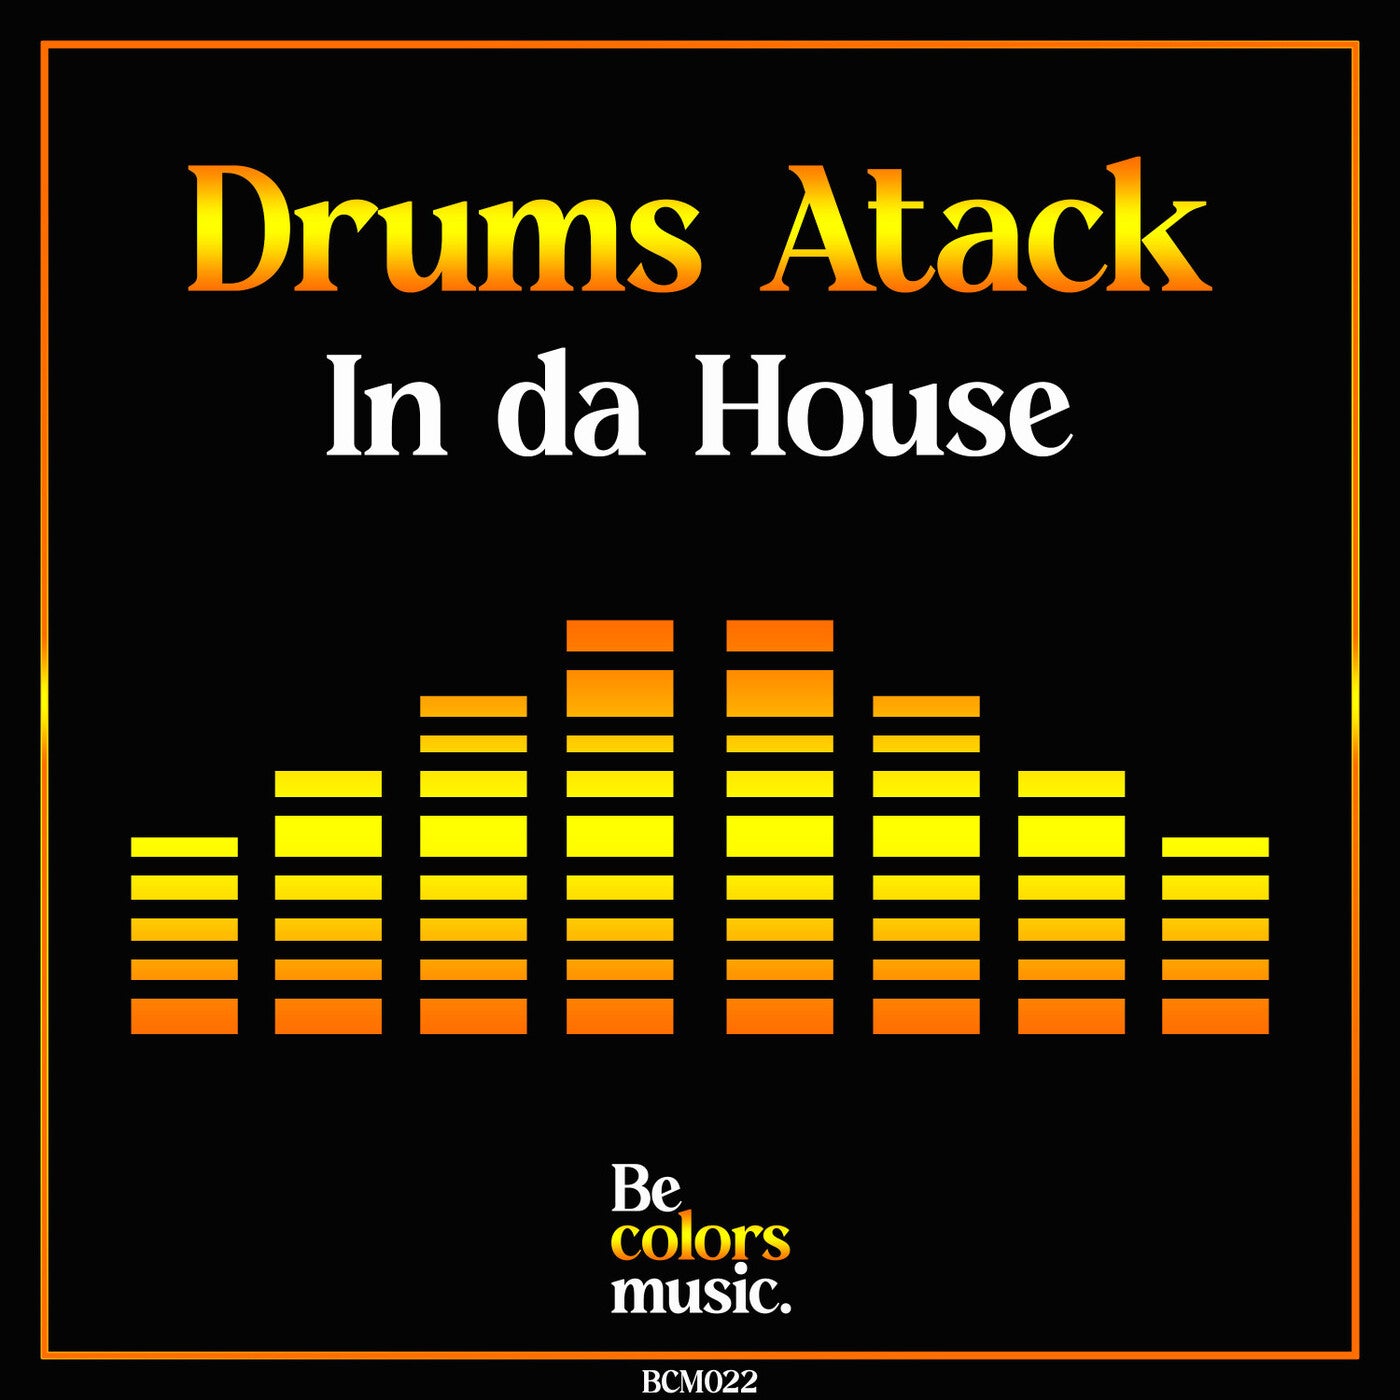 In da House (Original Mix)